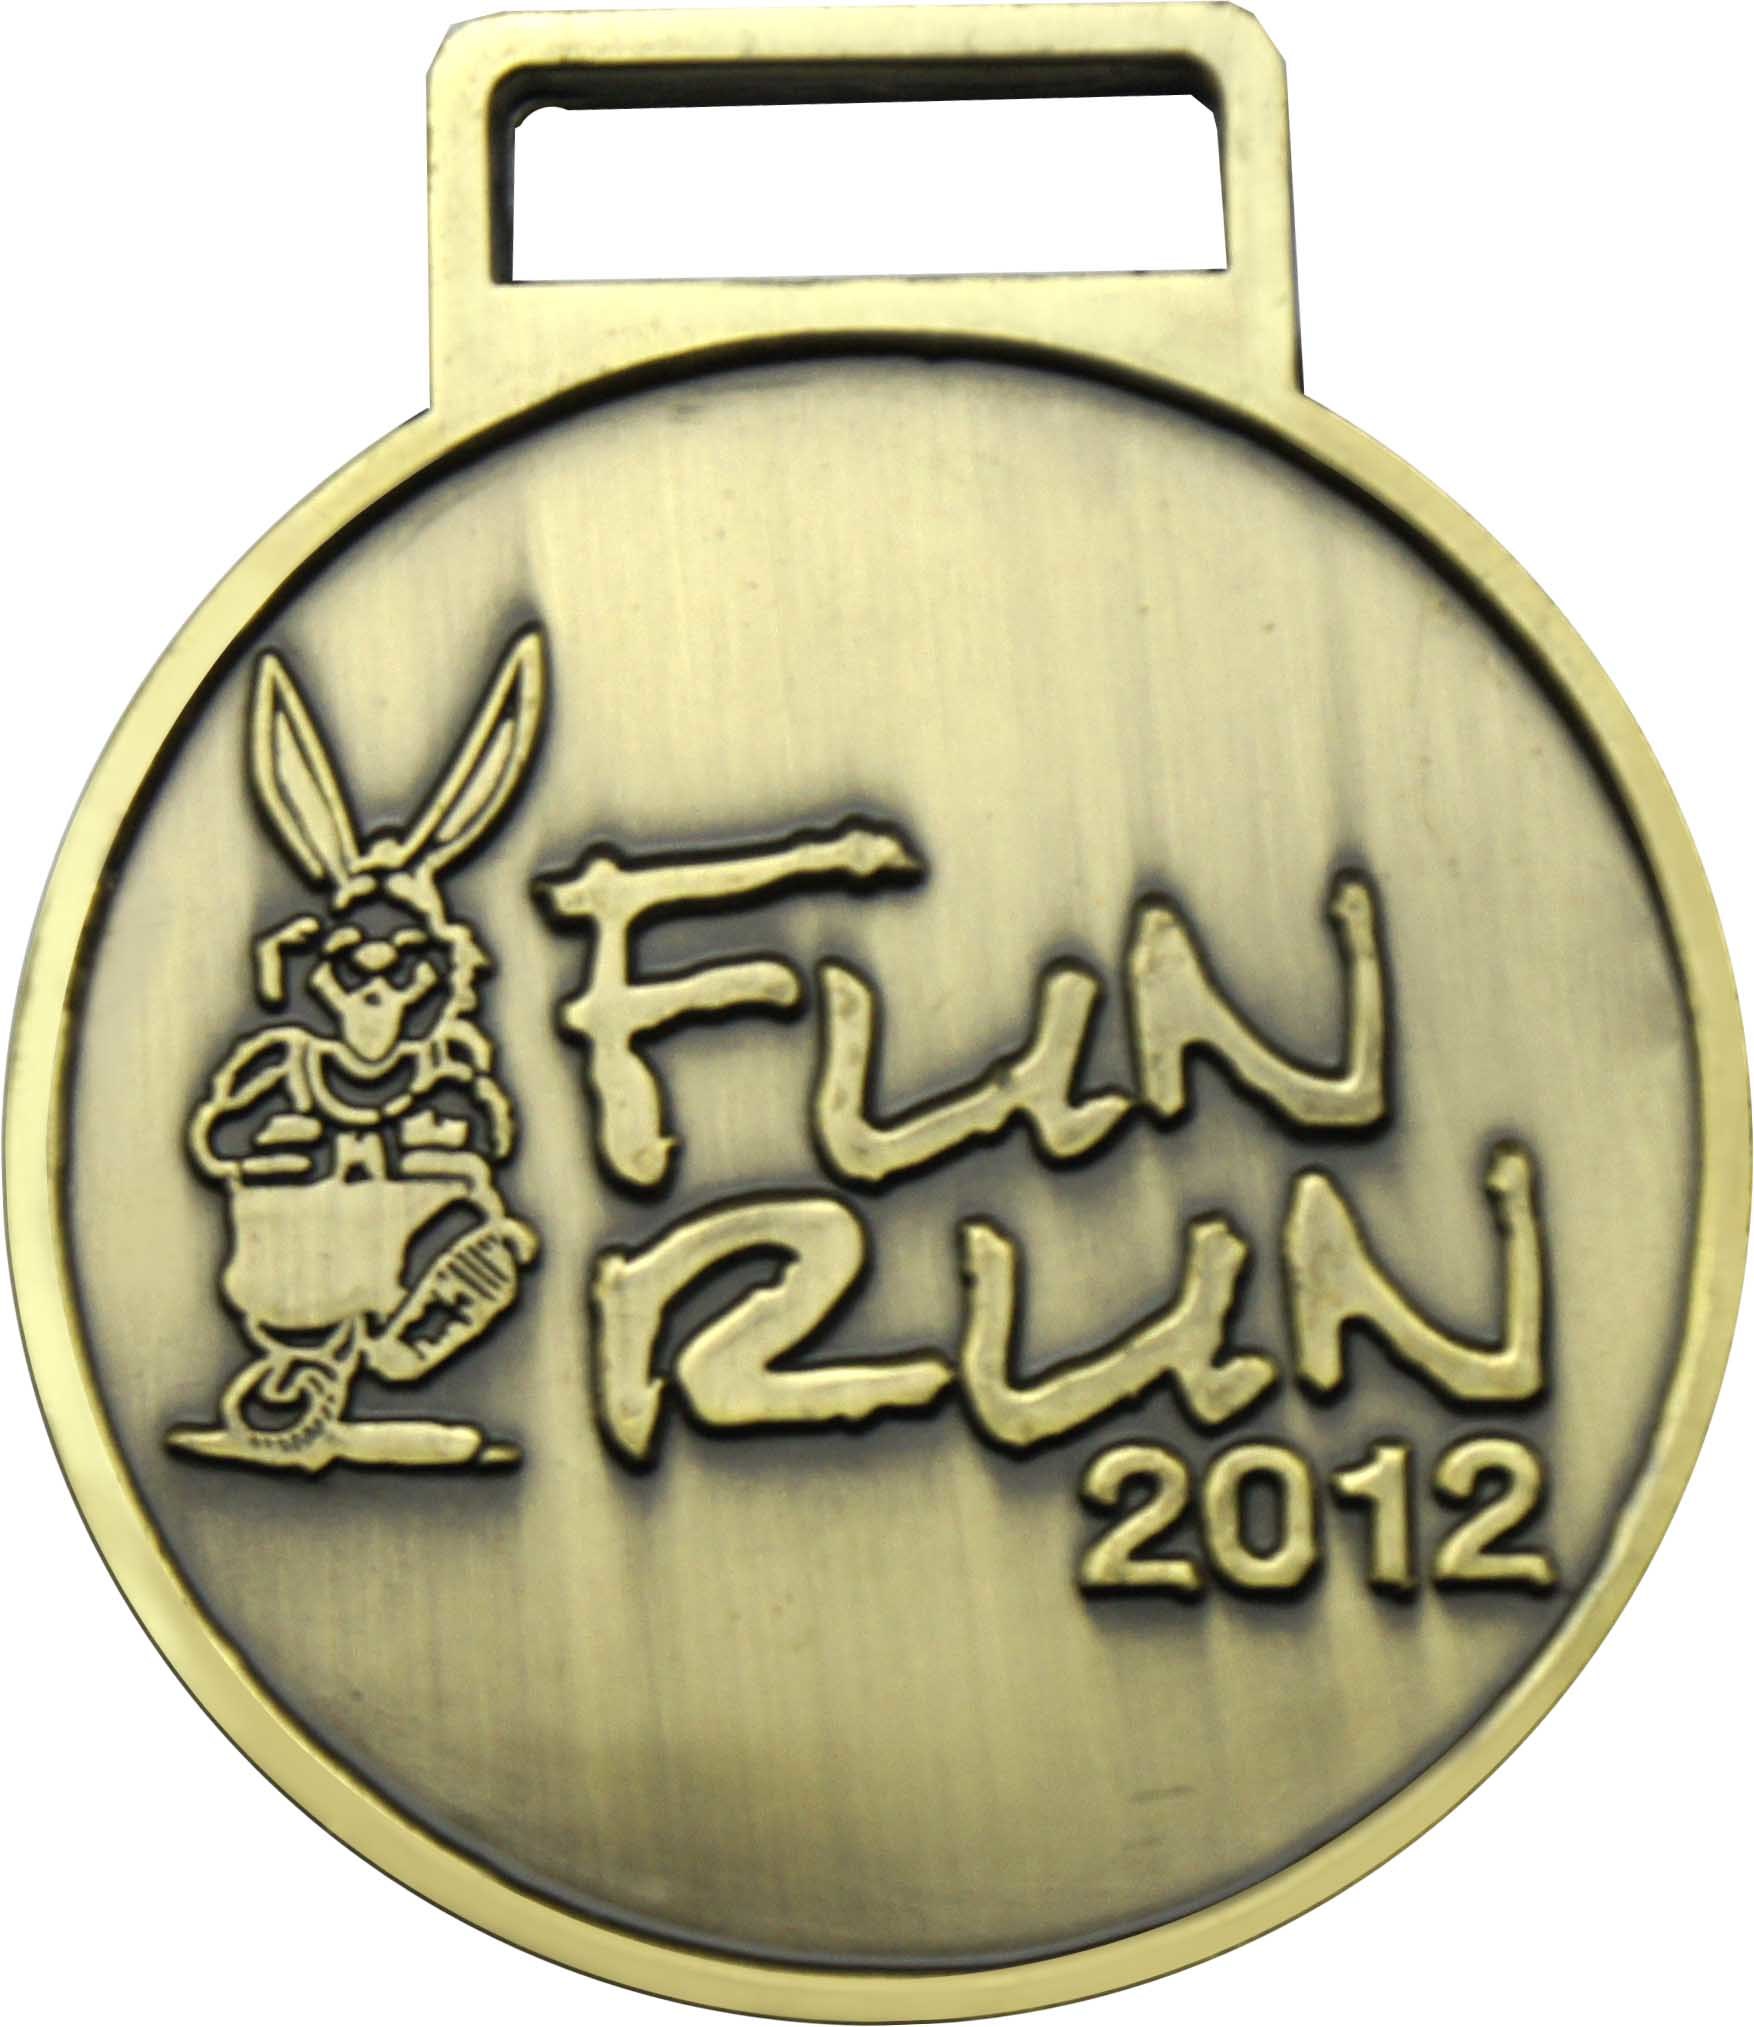 Running Event Medal